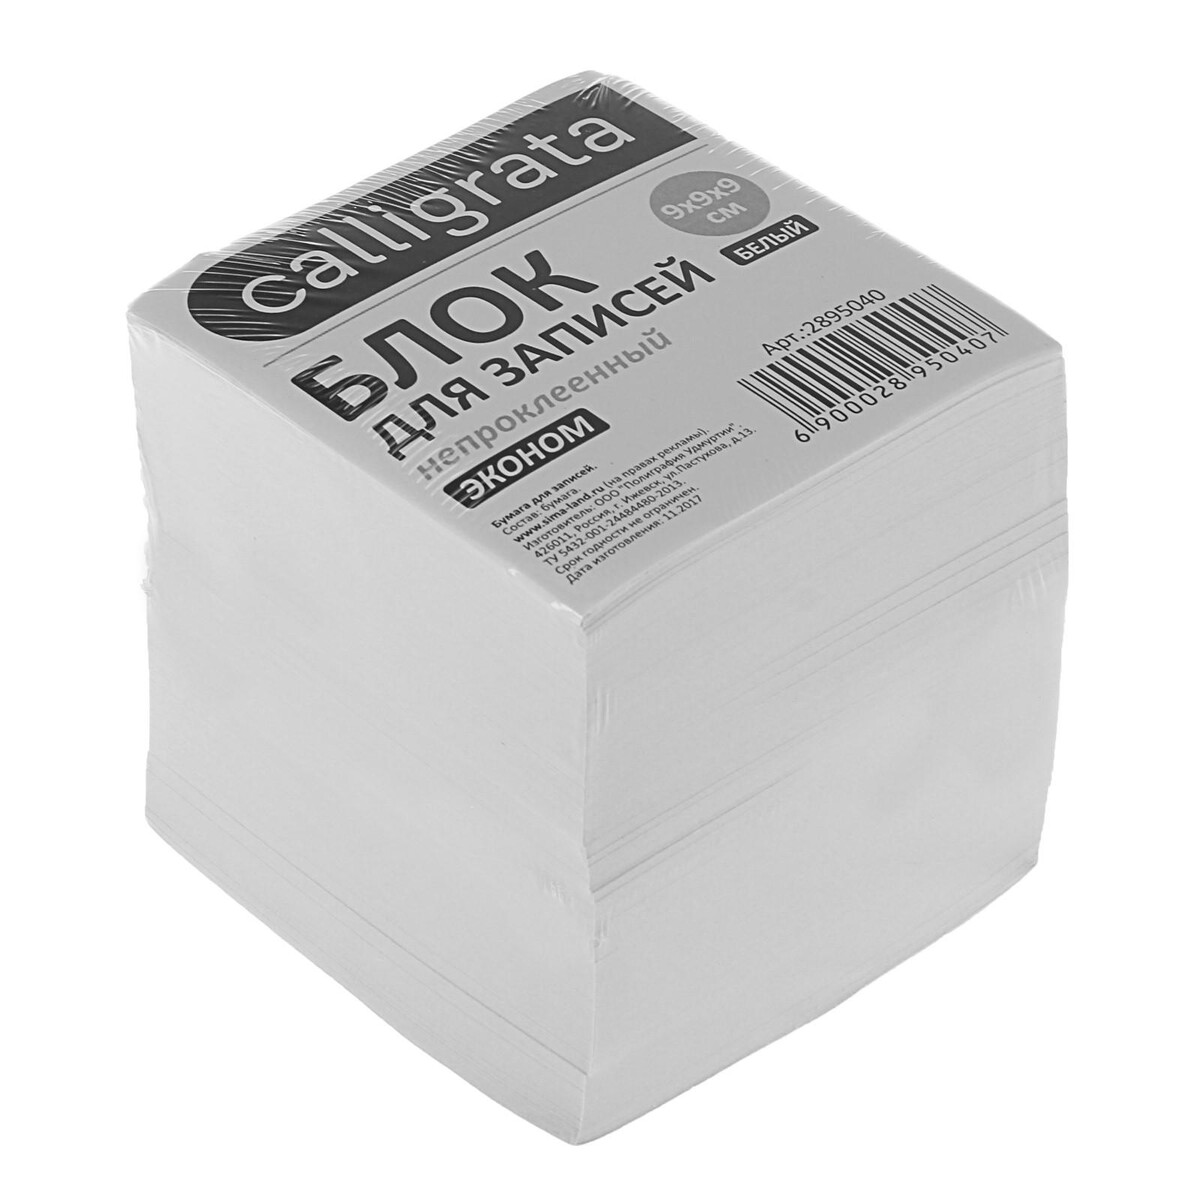 Блок бумаги для записей 9x9x9 см, calligrata, 55 г/м², 70-80%, непроклеенный, белый блок бумаги д записей на склейке 9х9х9 calligrata белый 55г м2 белиз 70 80%